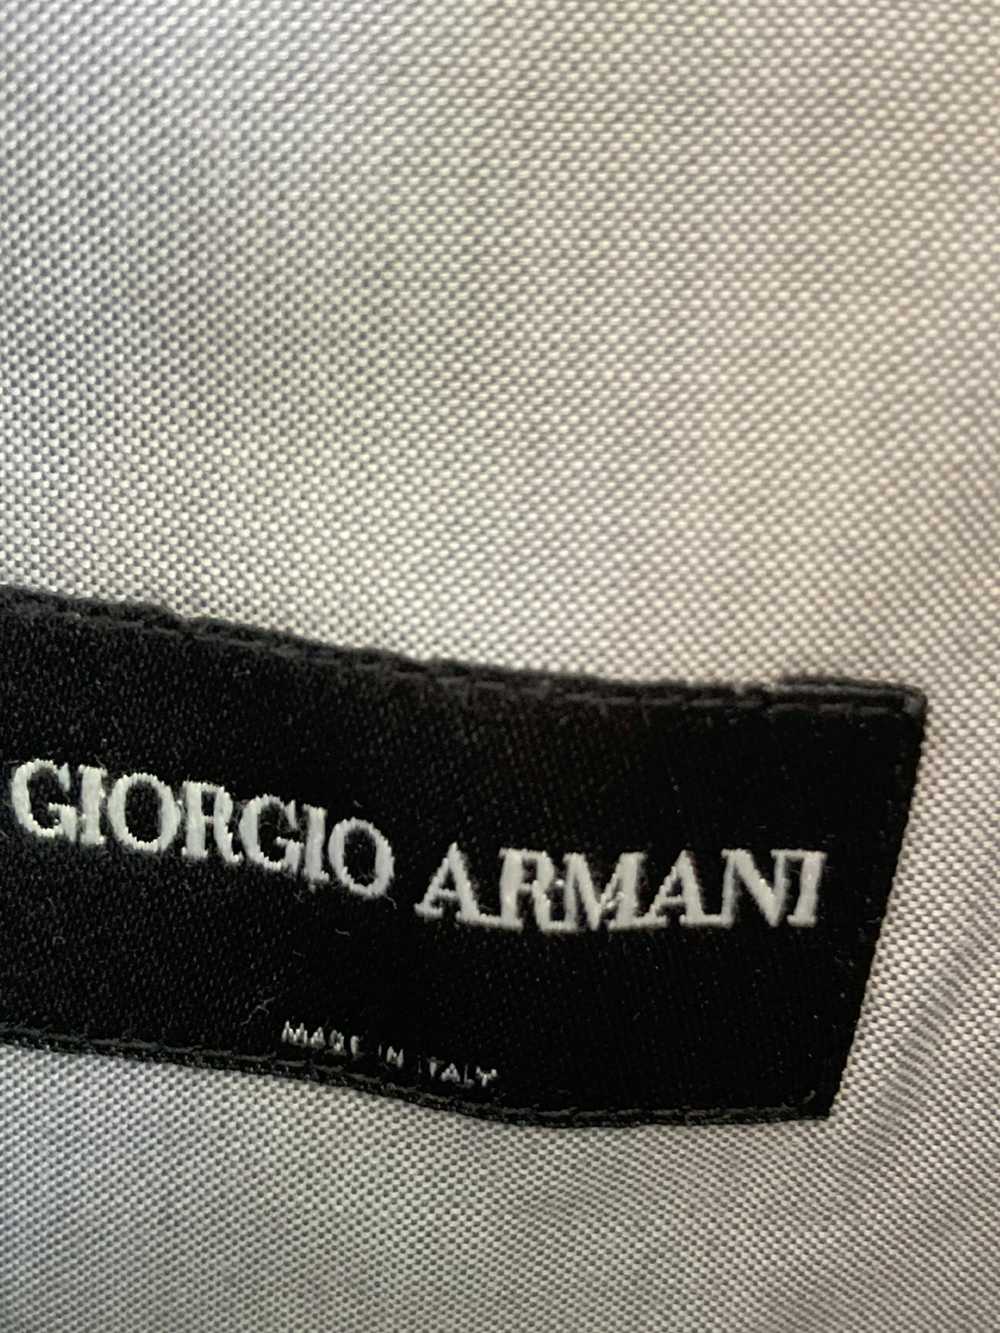 Giorgio Armani Giorgio Armani button up shirts - image 4